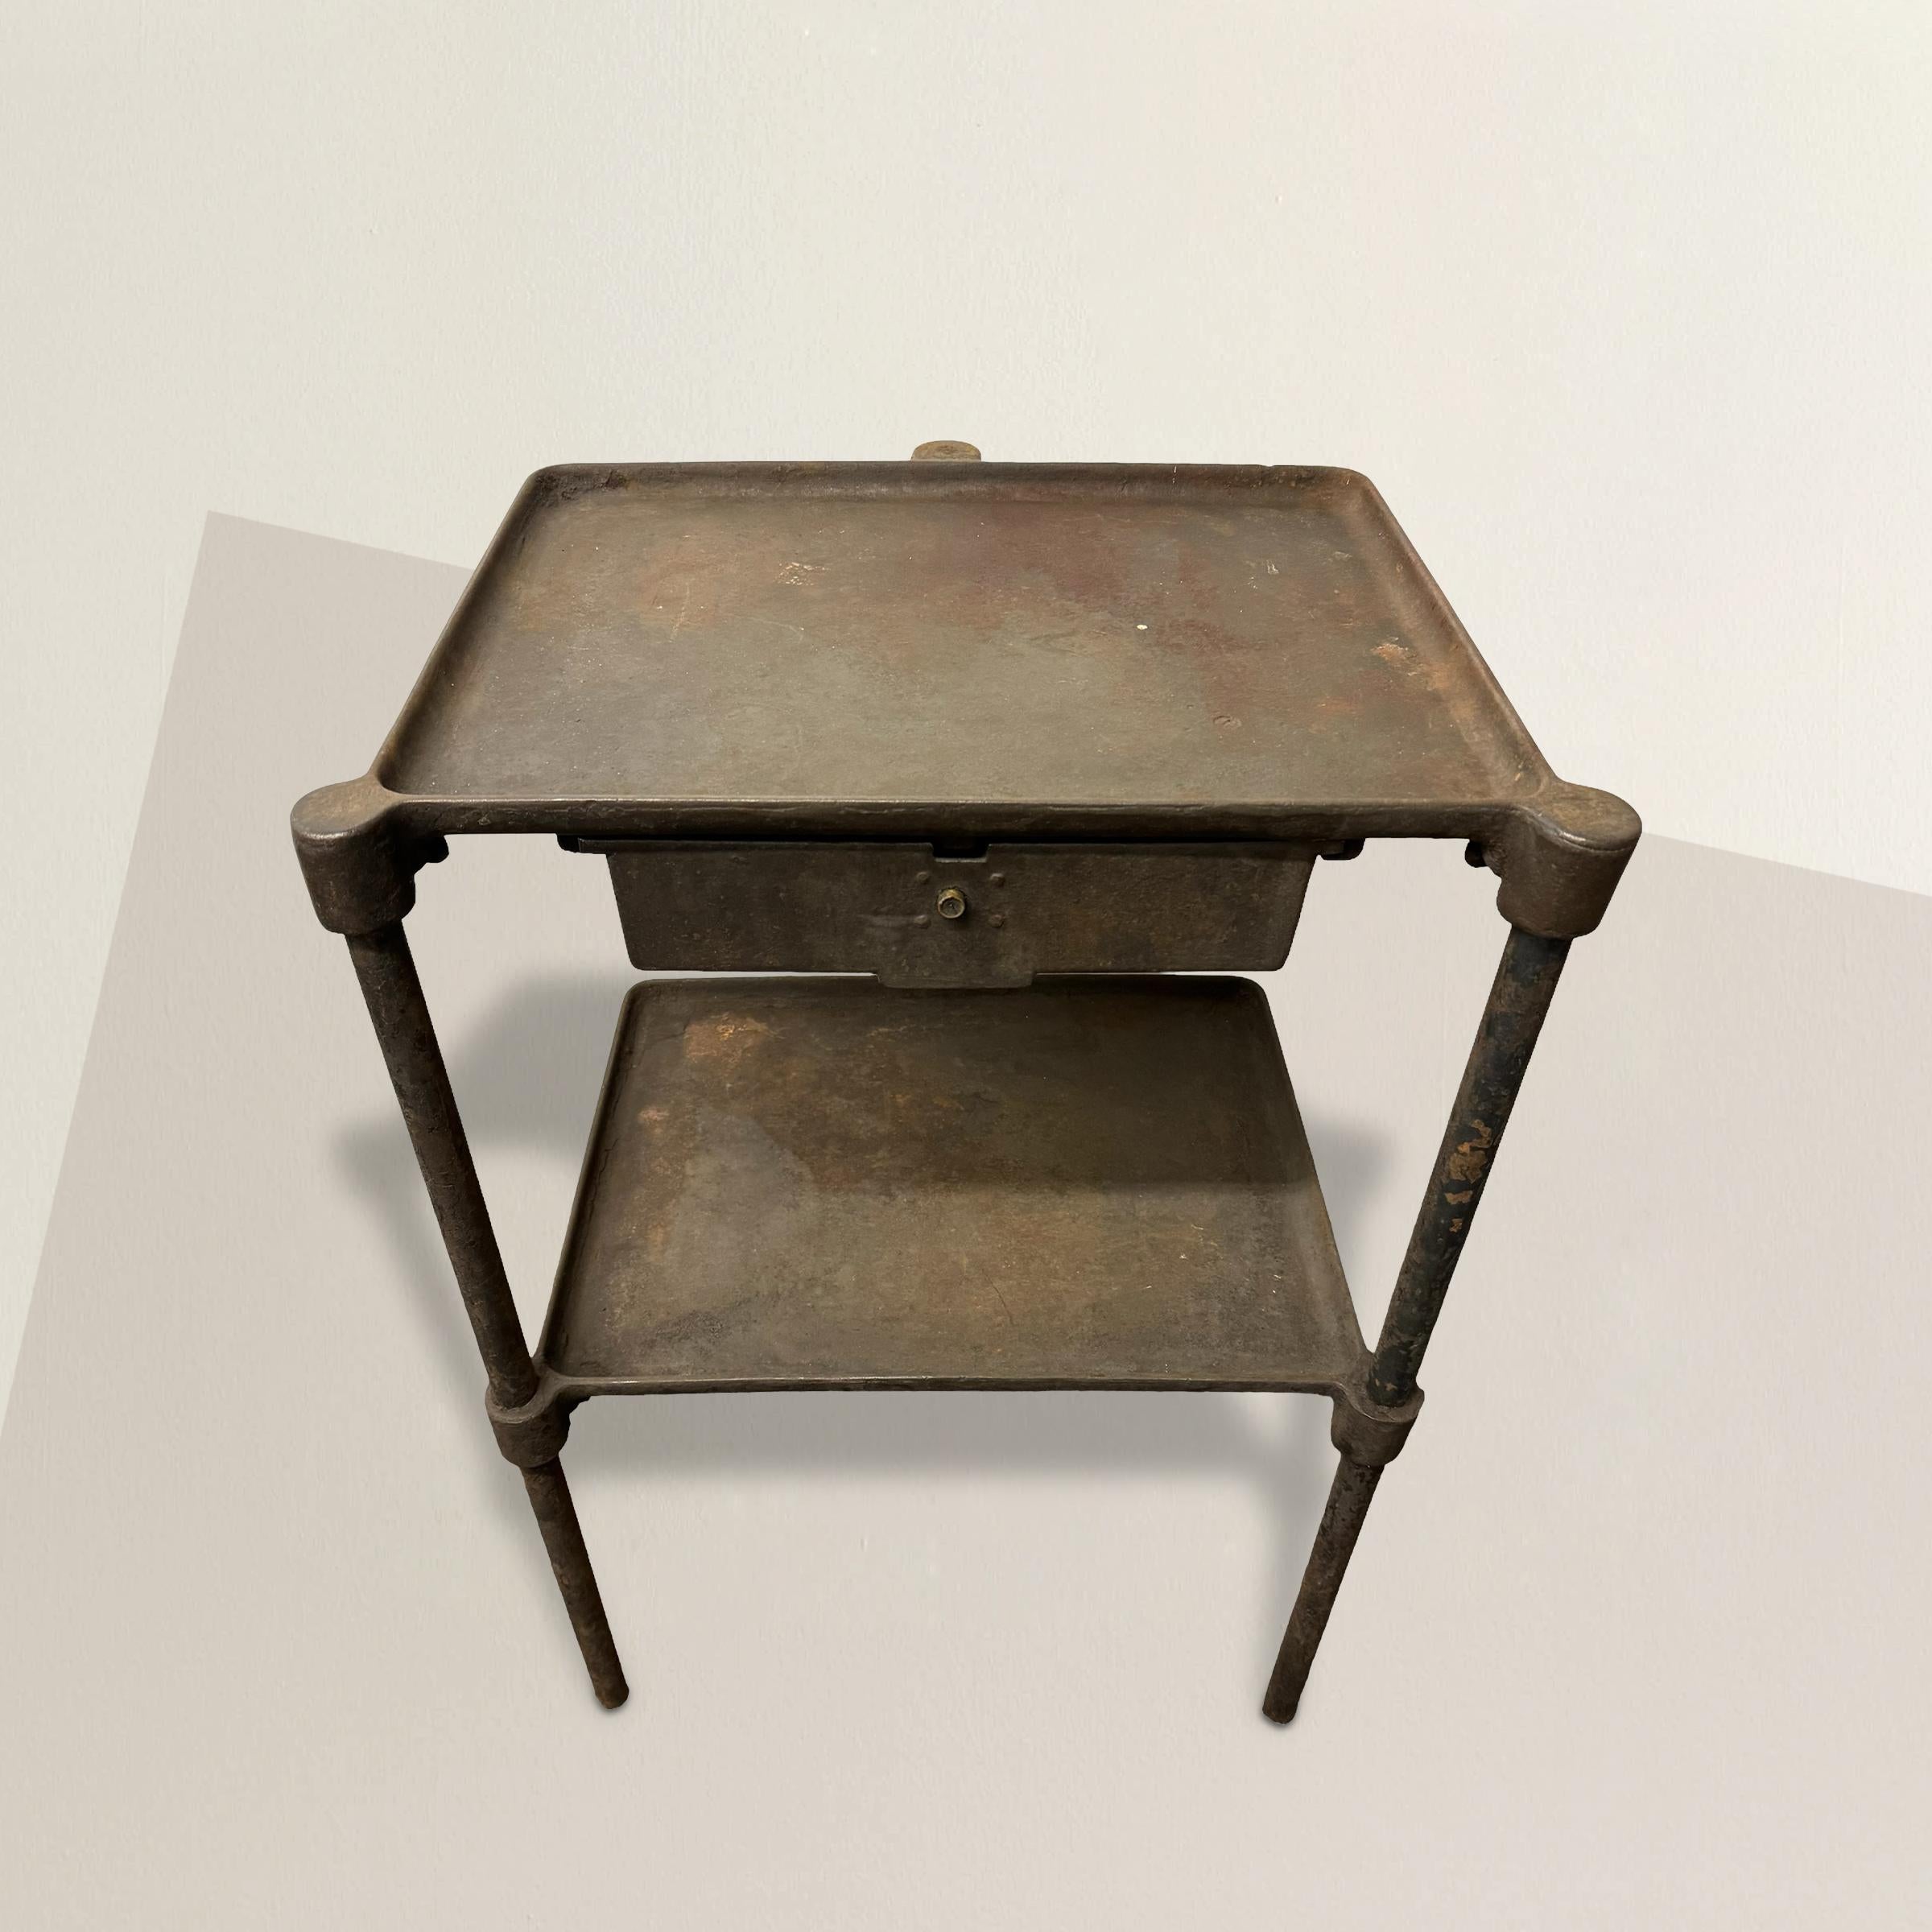 Cette table industrielle américaine en acier du début du XXe siècle incarne la fonctionnalité brute et l'esthétique utilitaire du design industriel. Avec trois pieds robustes, un seul tiroir et une étagère en dessous, cette table a été conçue pour